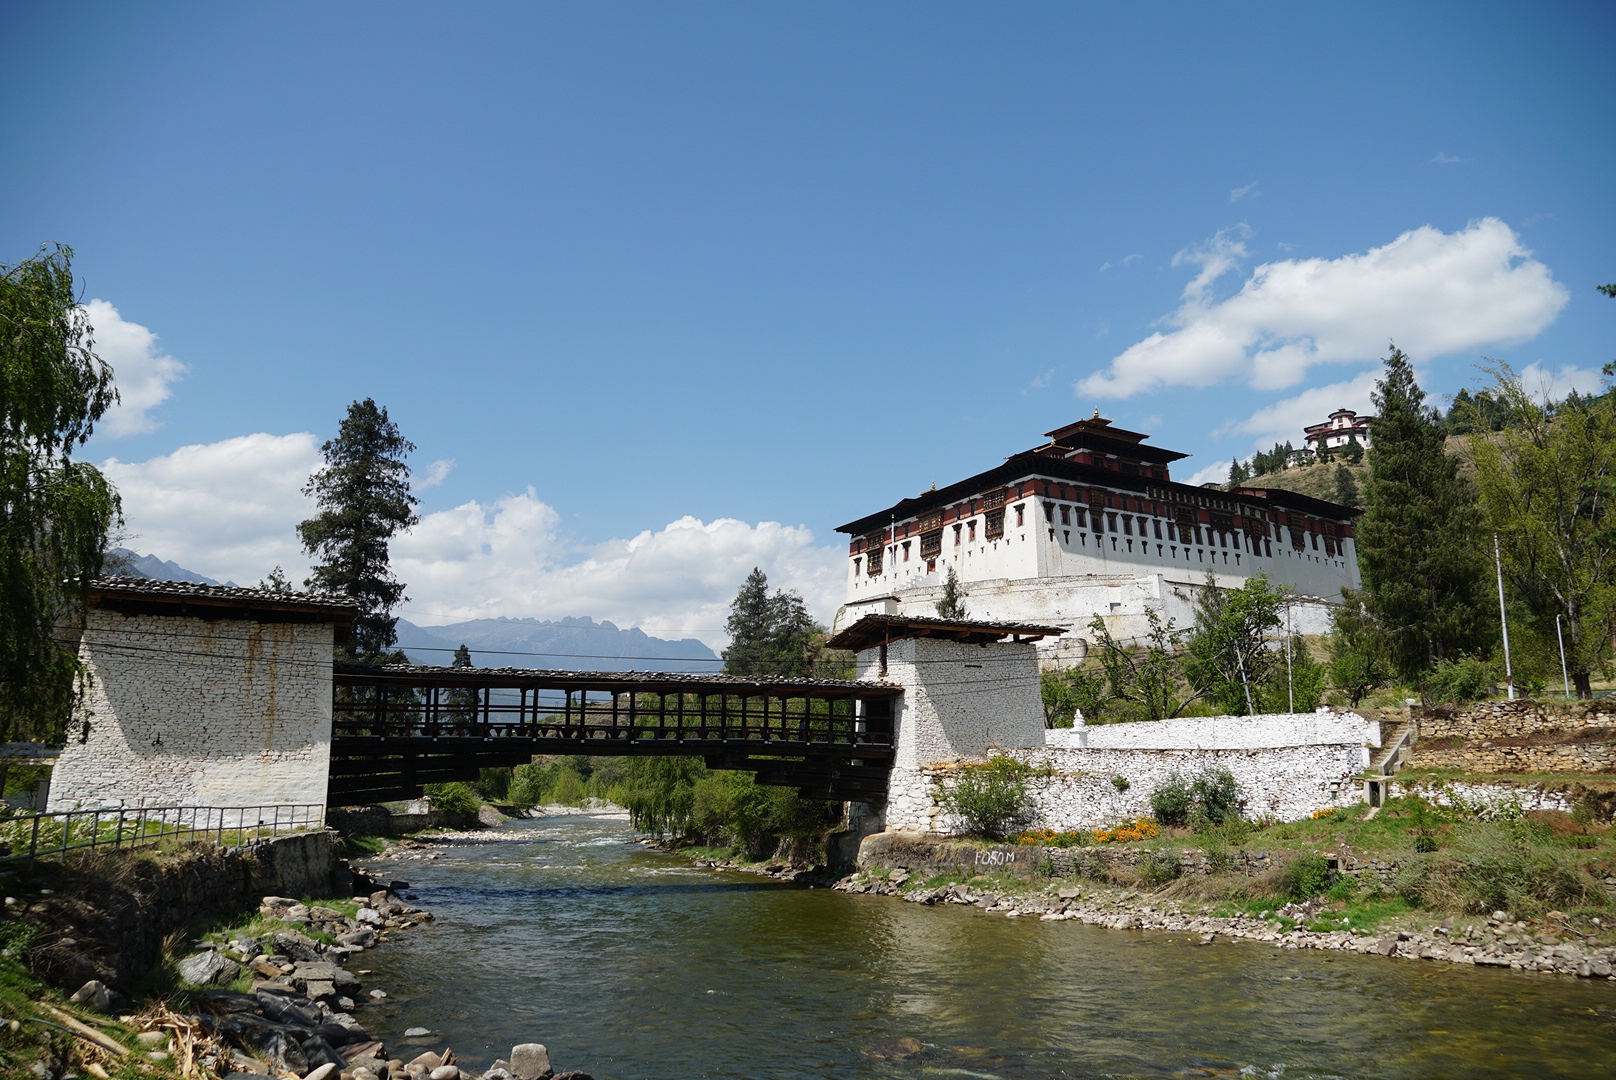 Rinpung dzong in Paro